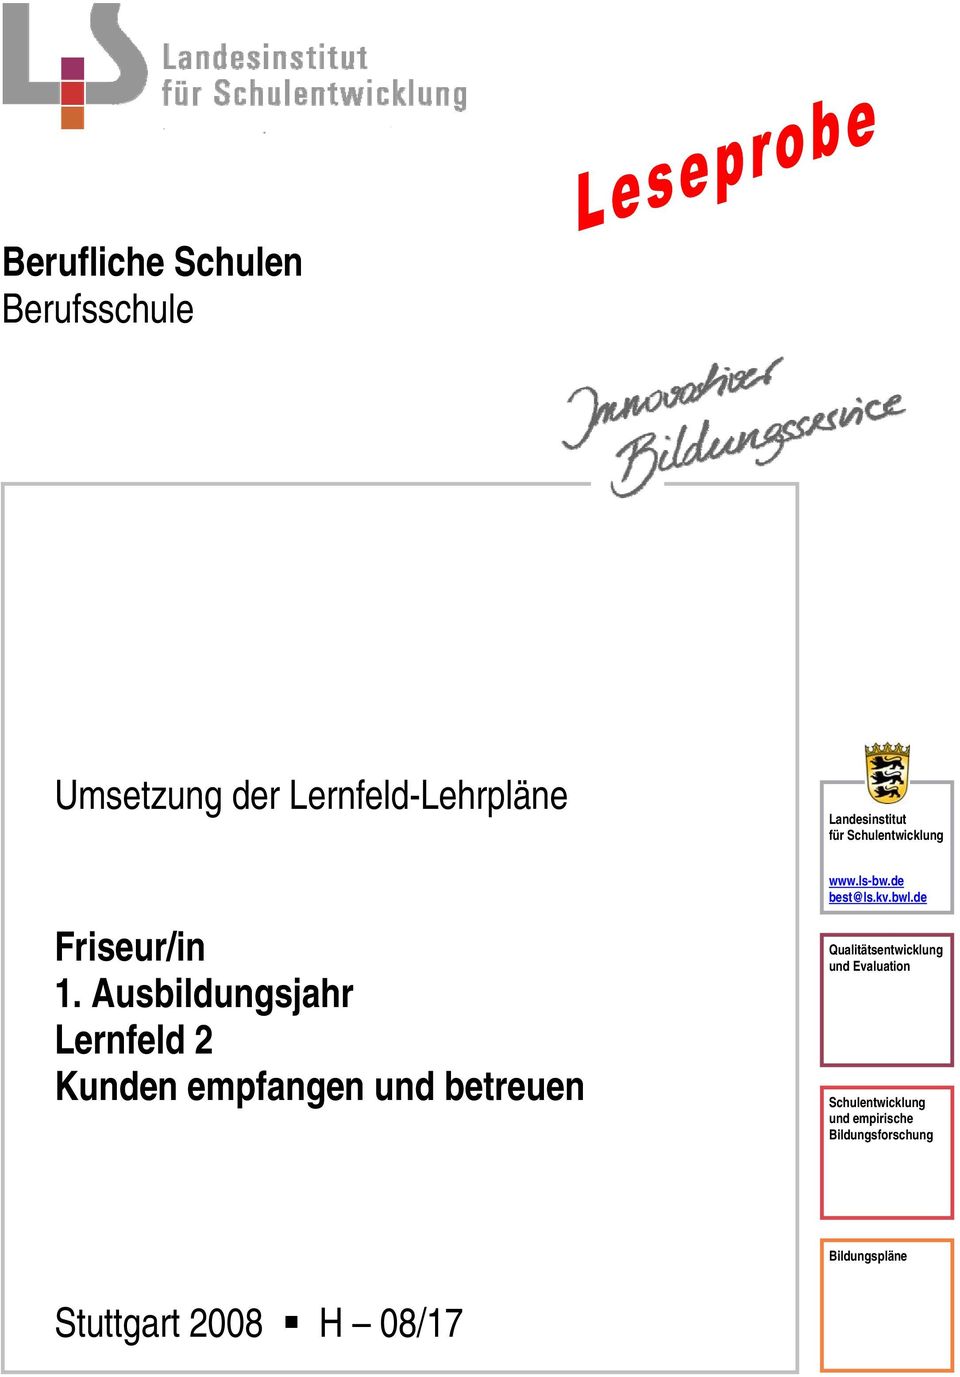 Ausbildungsjahr Lernfeld 2 Kunden empfangen und betreuen www.ls-bw.de best@ls.kv.